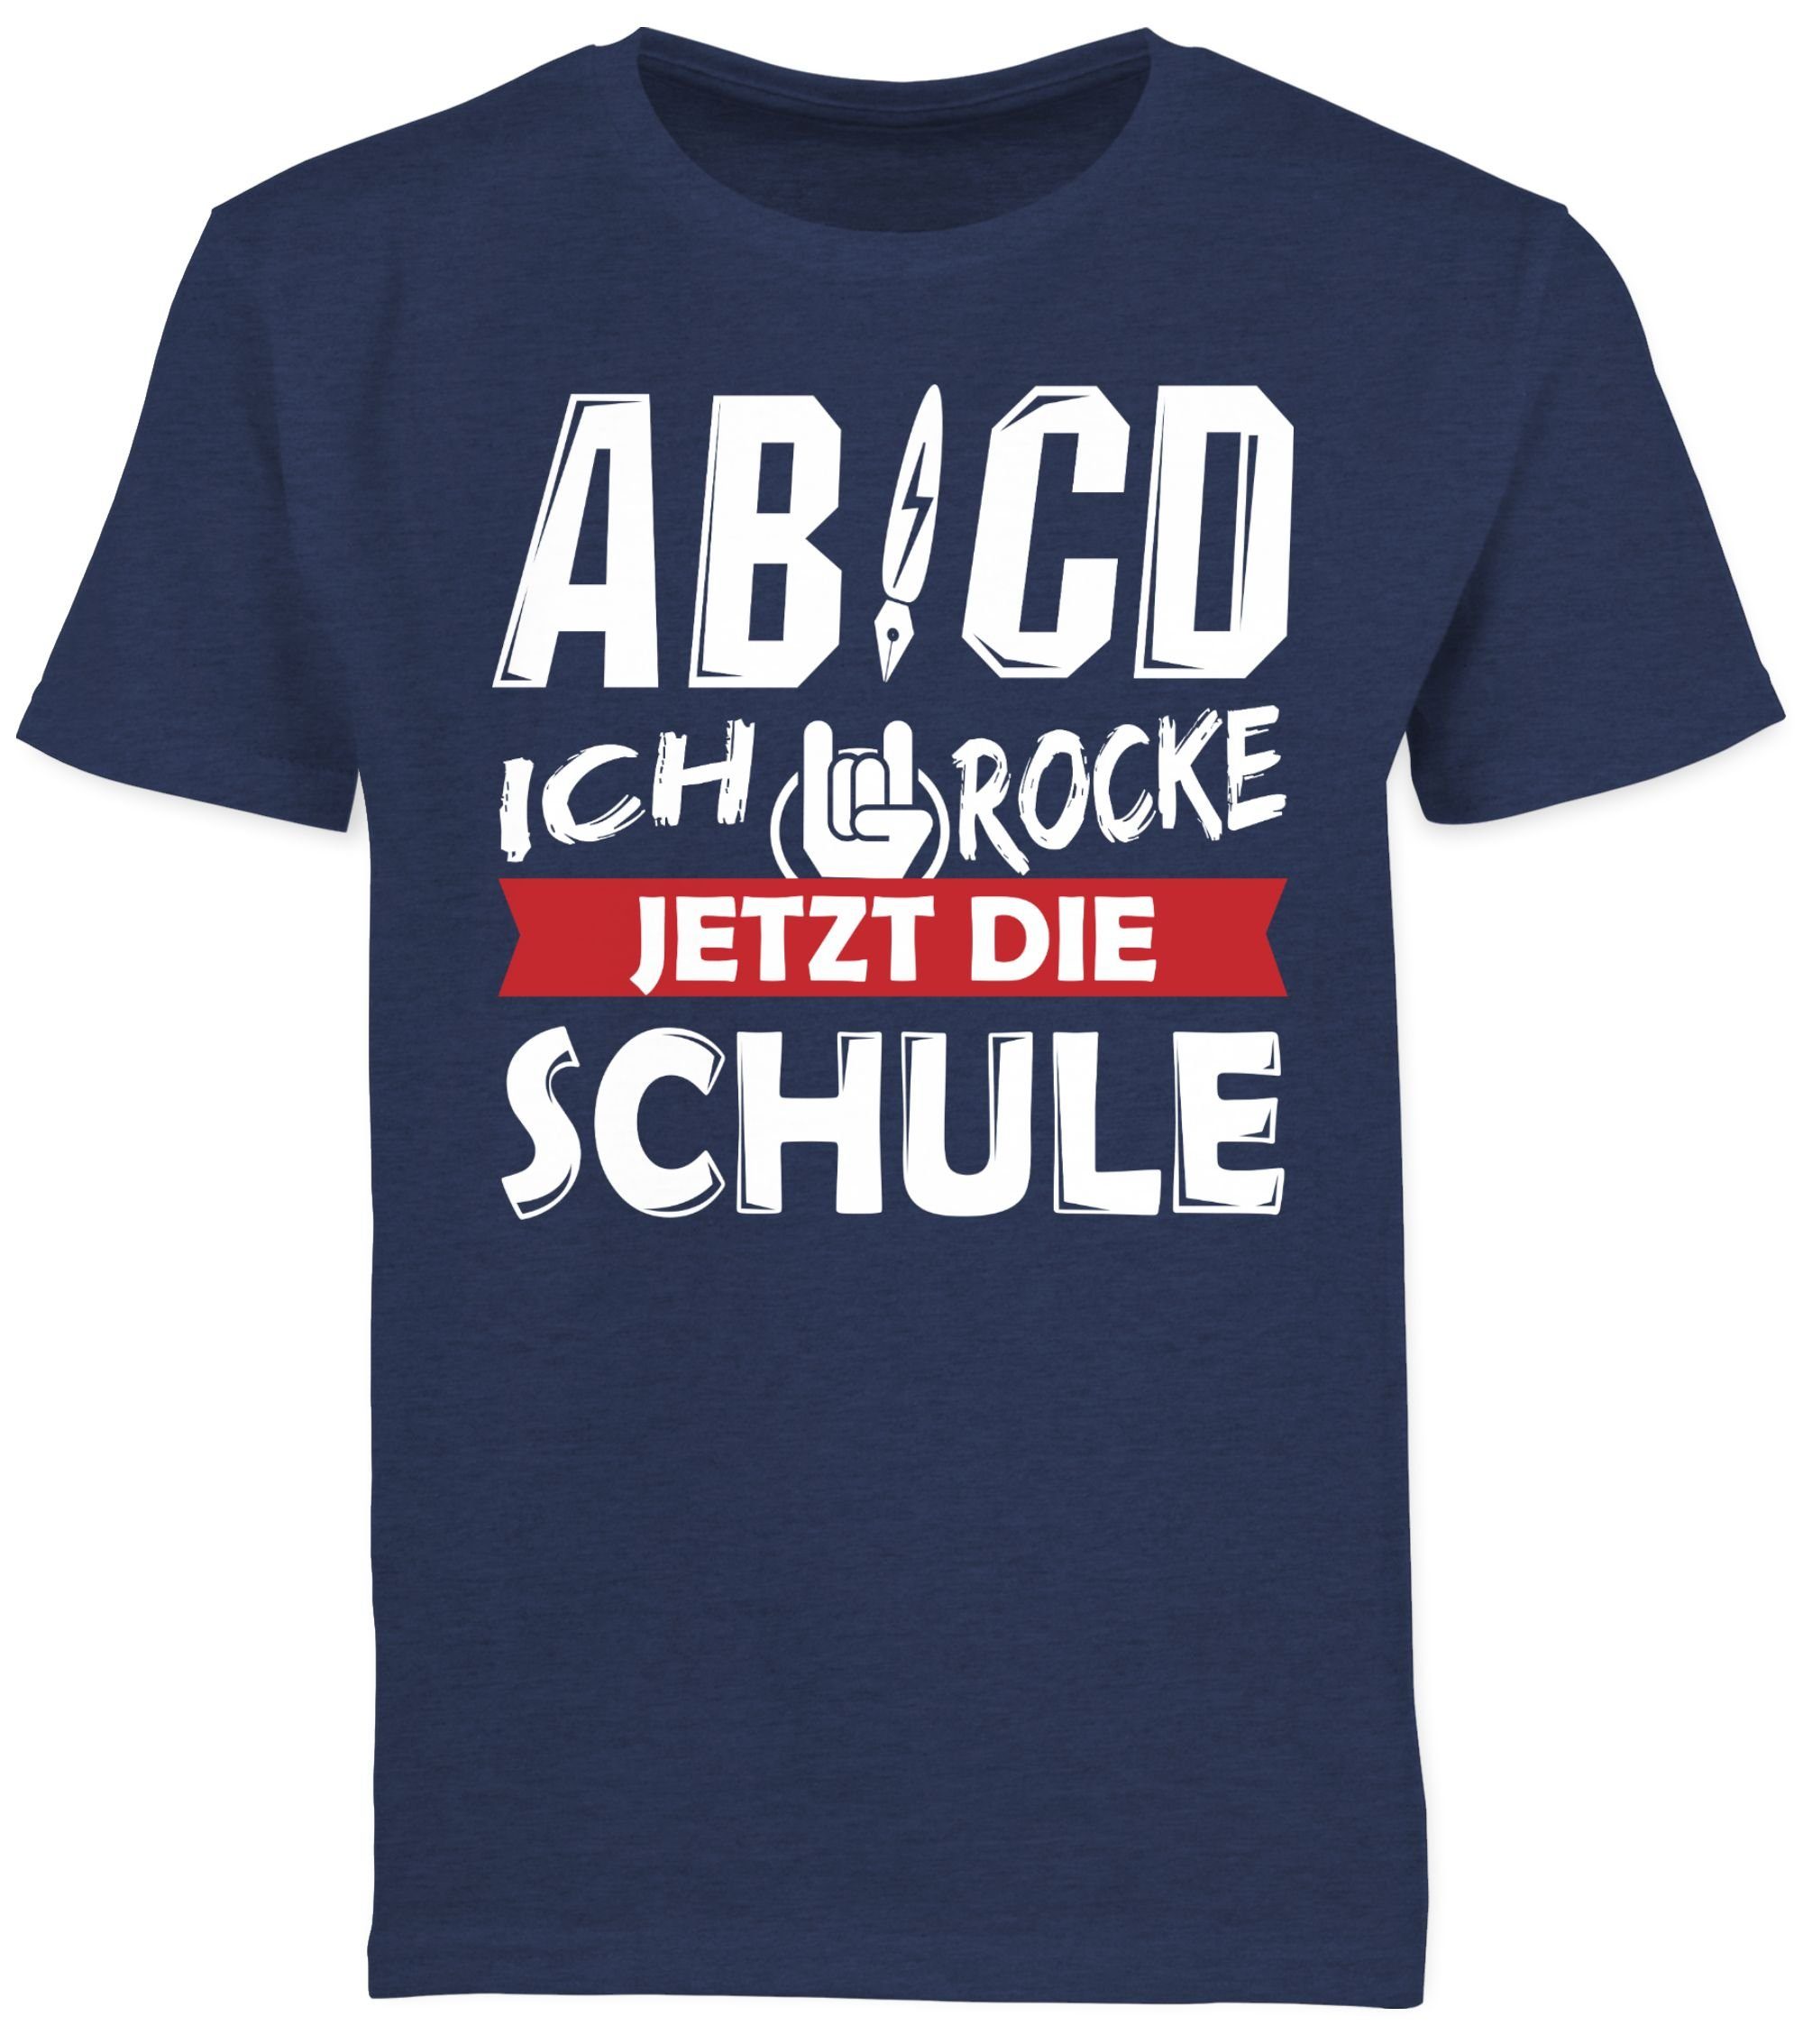 Shirtracer T-Shirt ABCD Ich Dunkelblau Junge rocke Geschenke Schulanfang Schule 3 Meliert jetzt die Einschulung